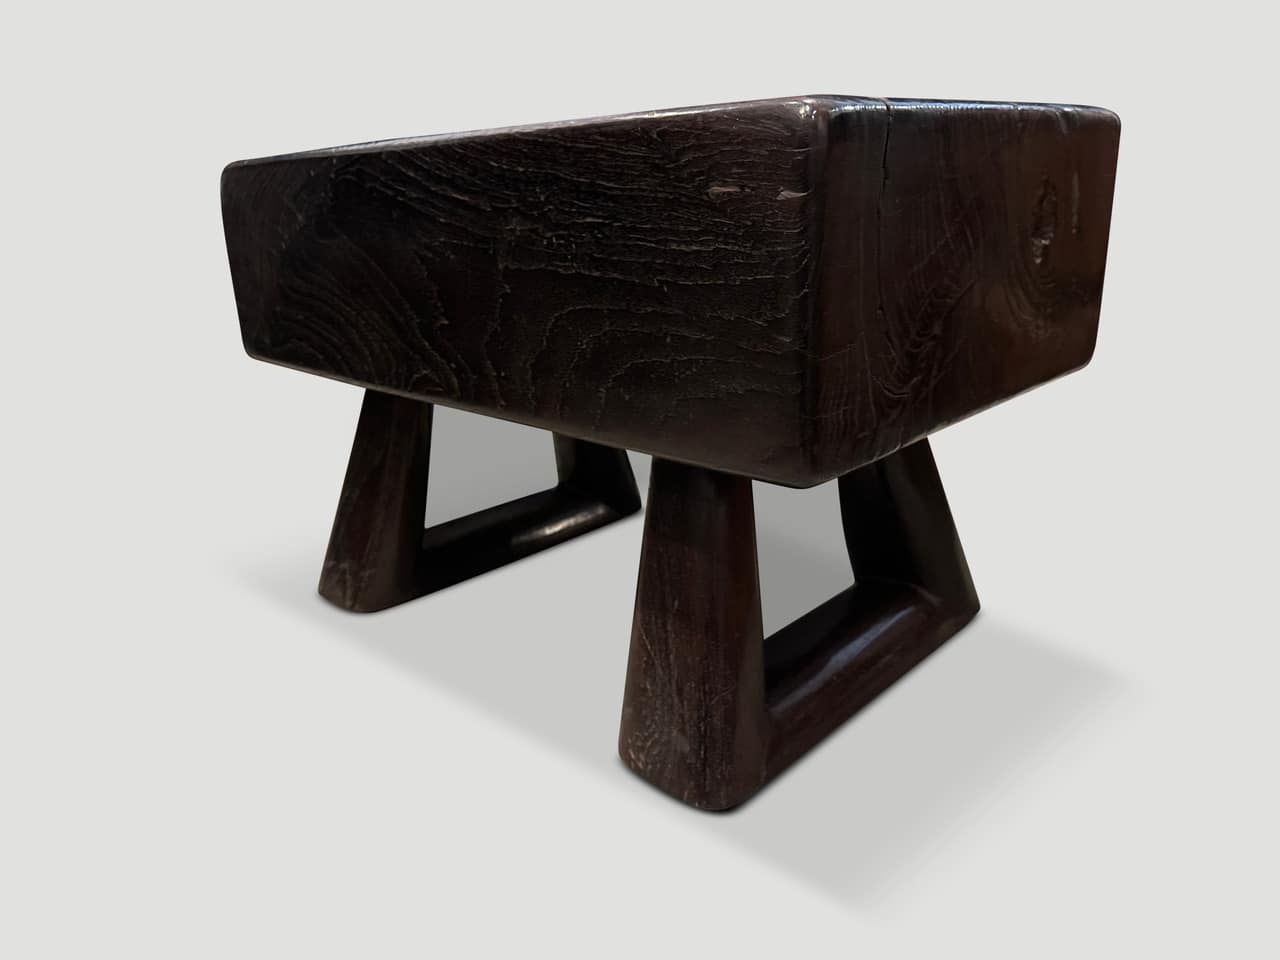 teak wood log side table or bench